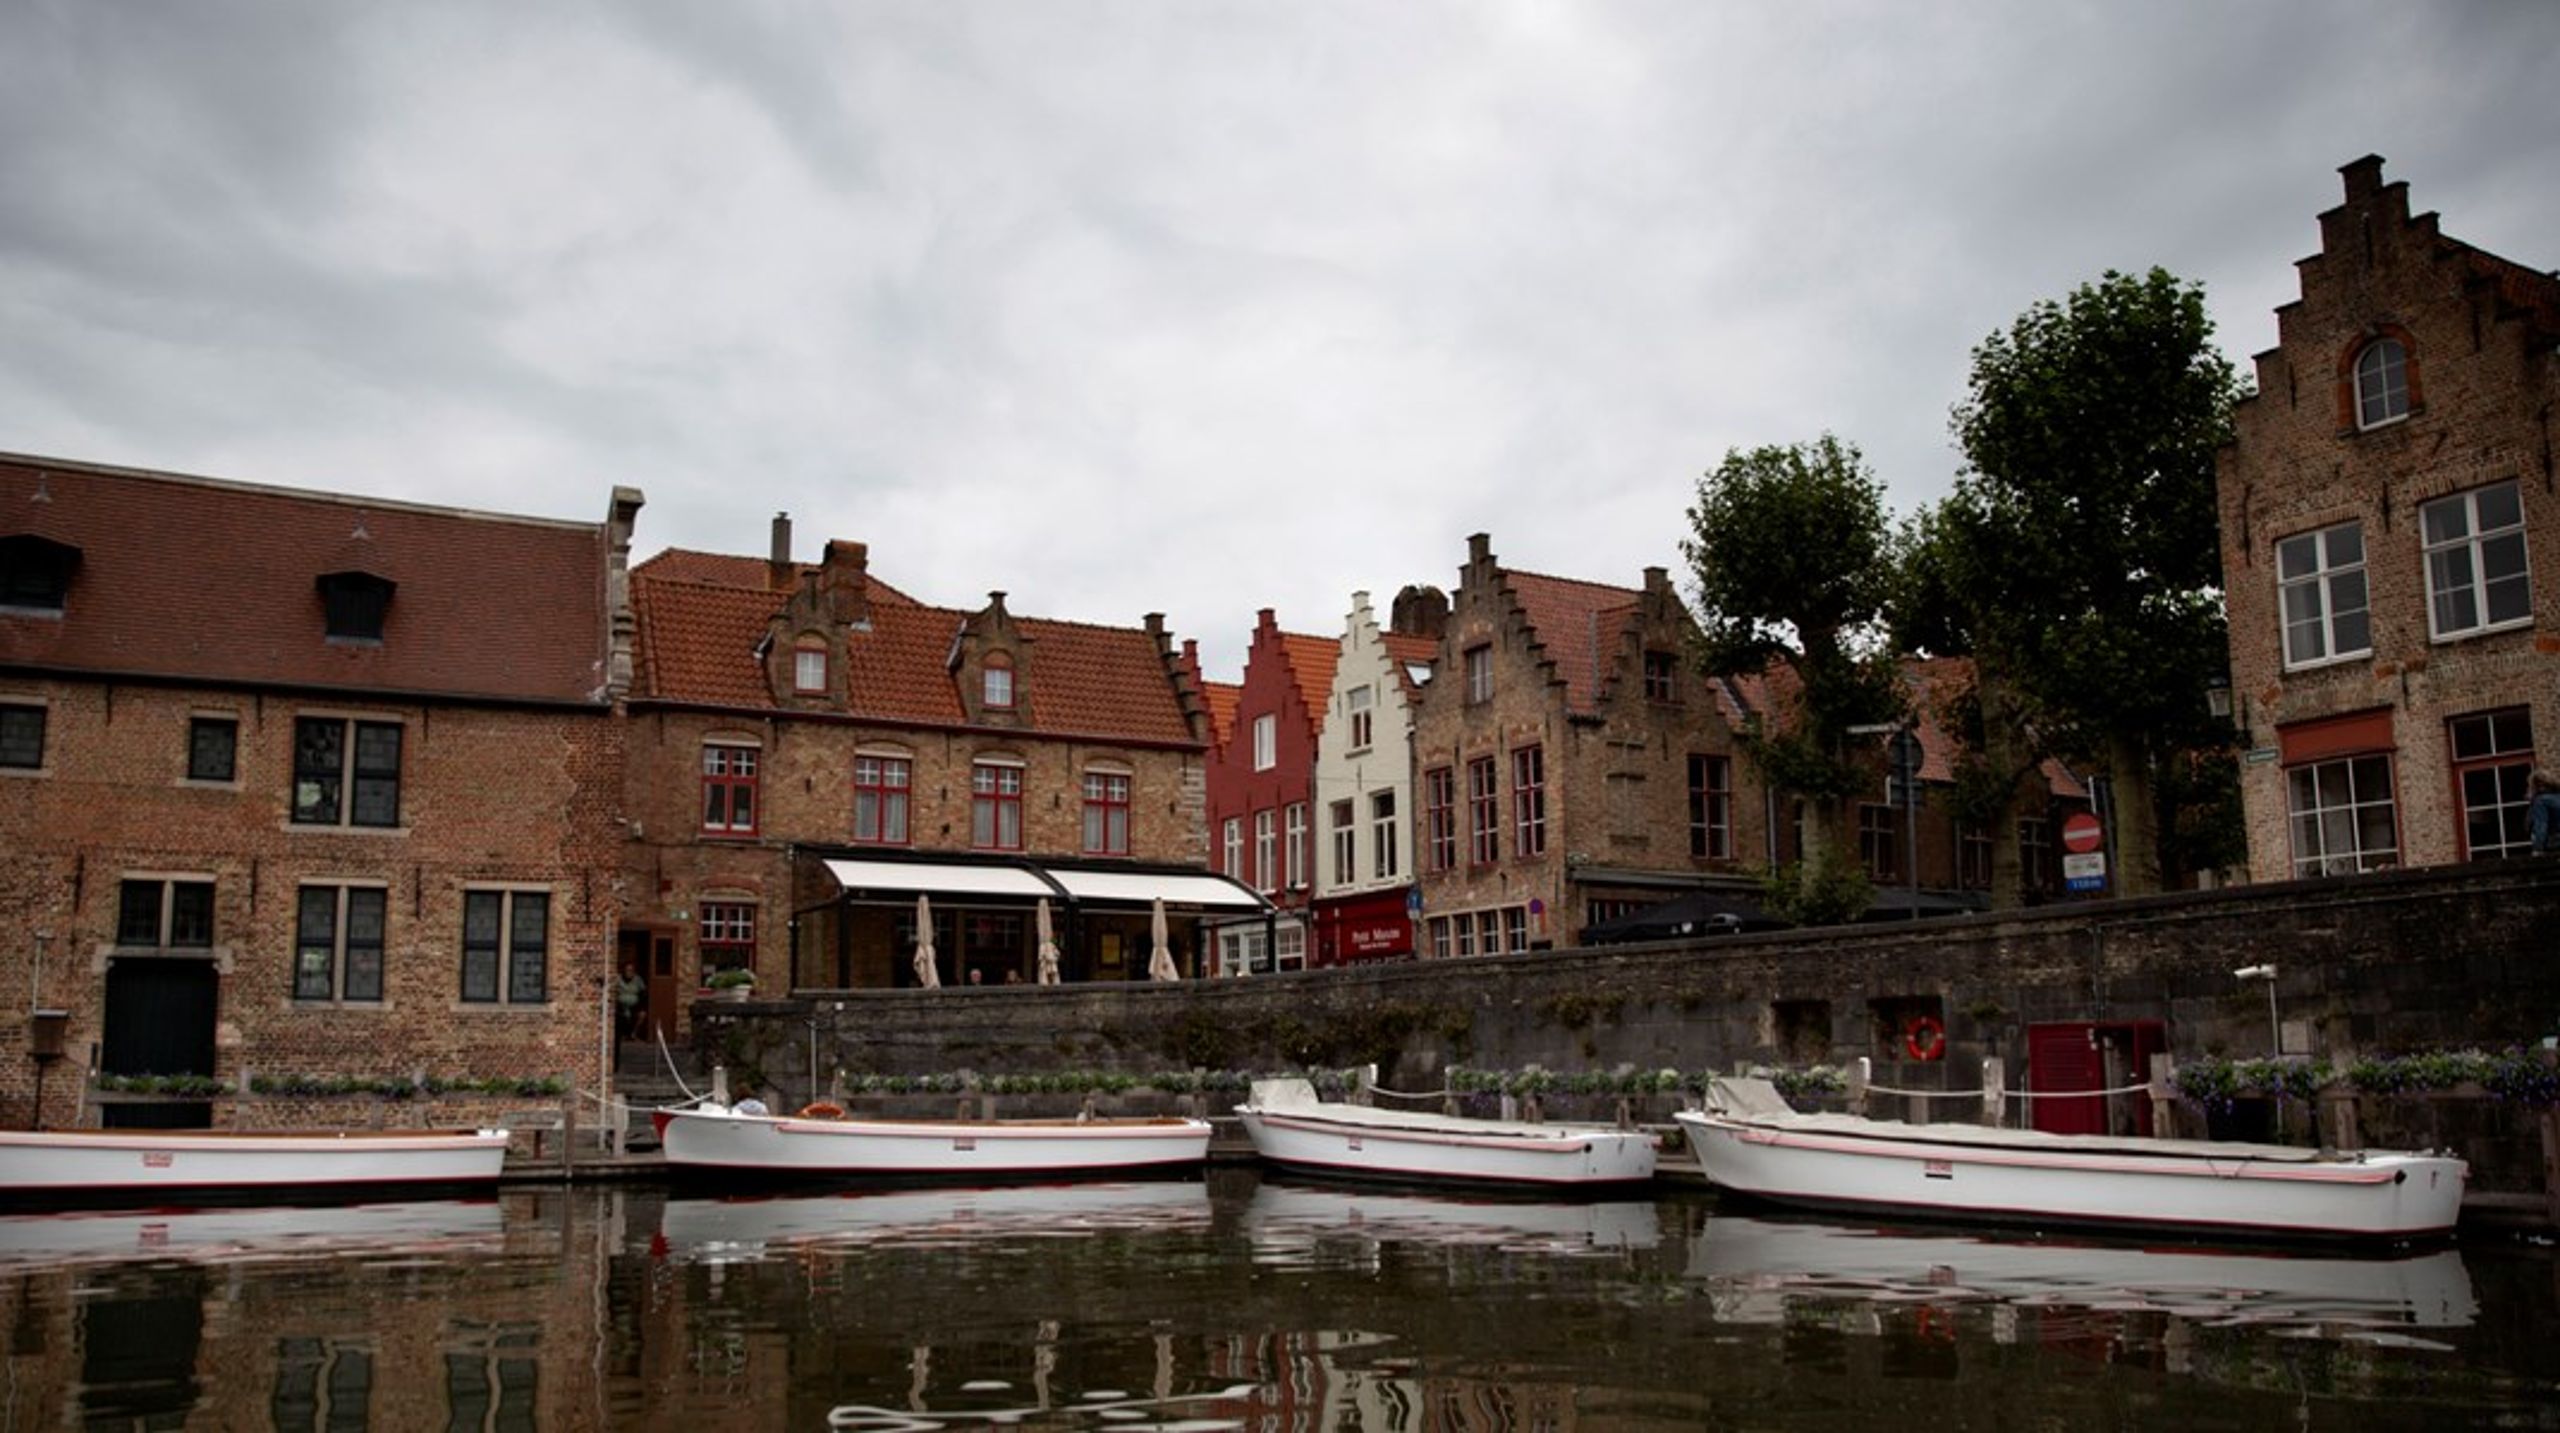 The College of Europe ligger i Bruges, men inte på platsen som bilden föreställer.&nbsp;